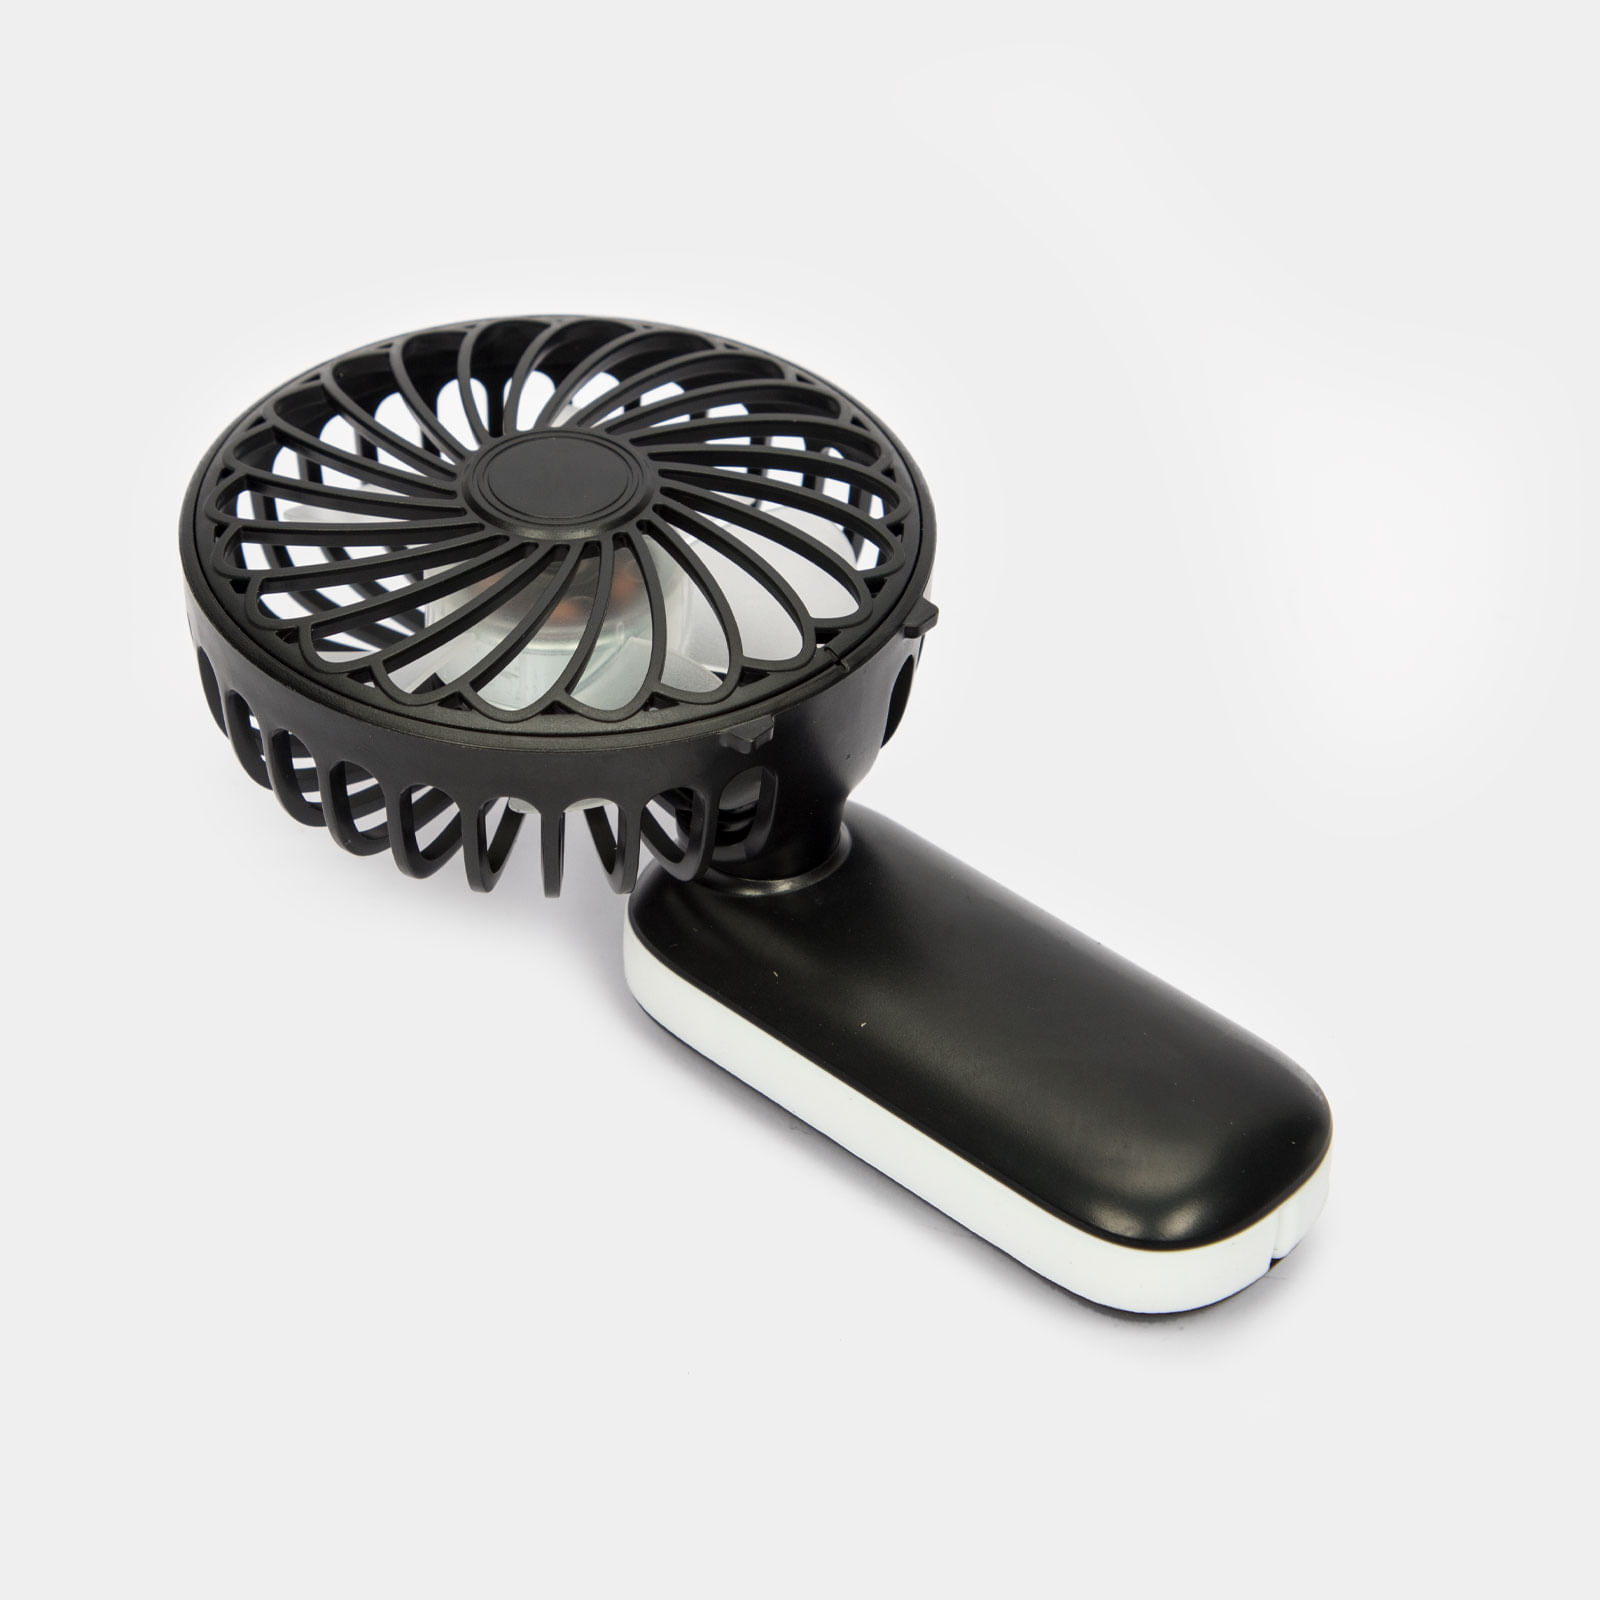 Mini ventilador Kingshan negro